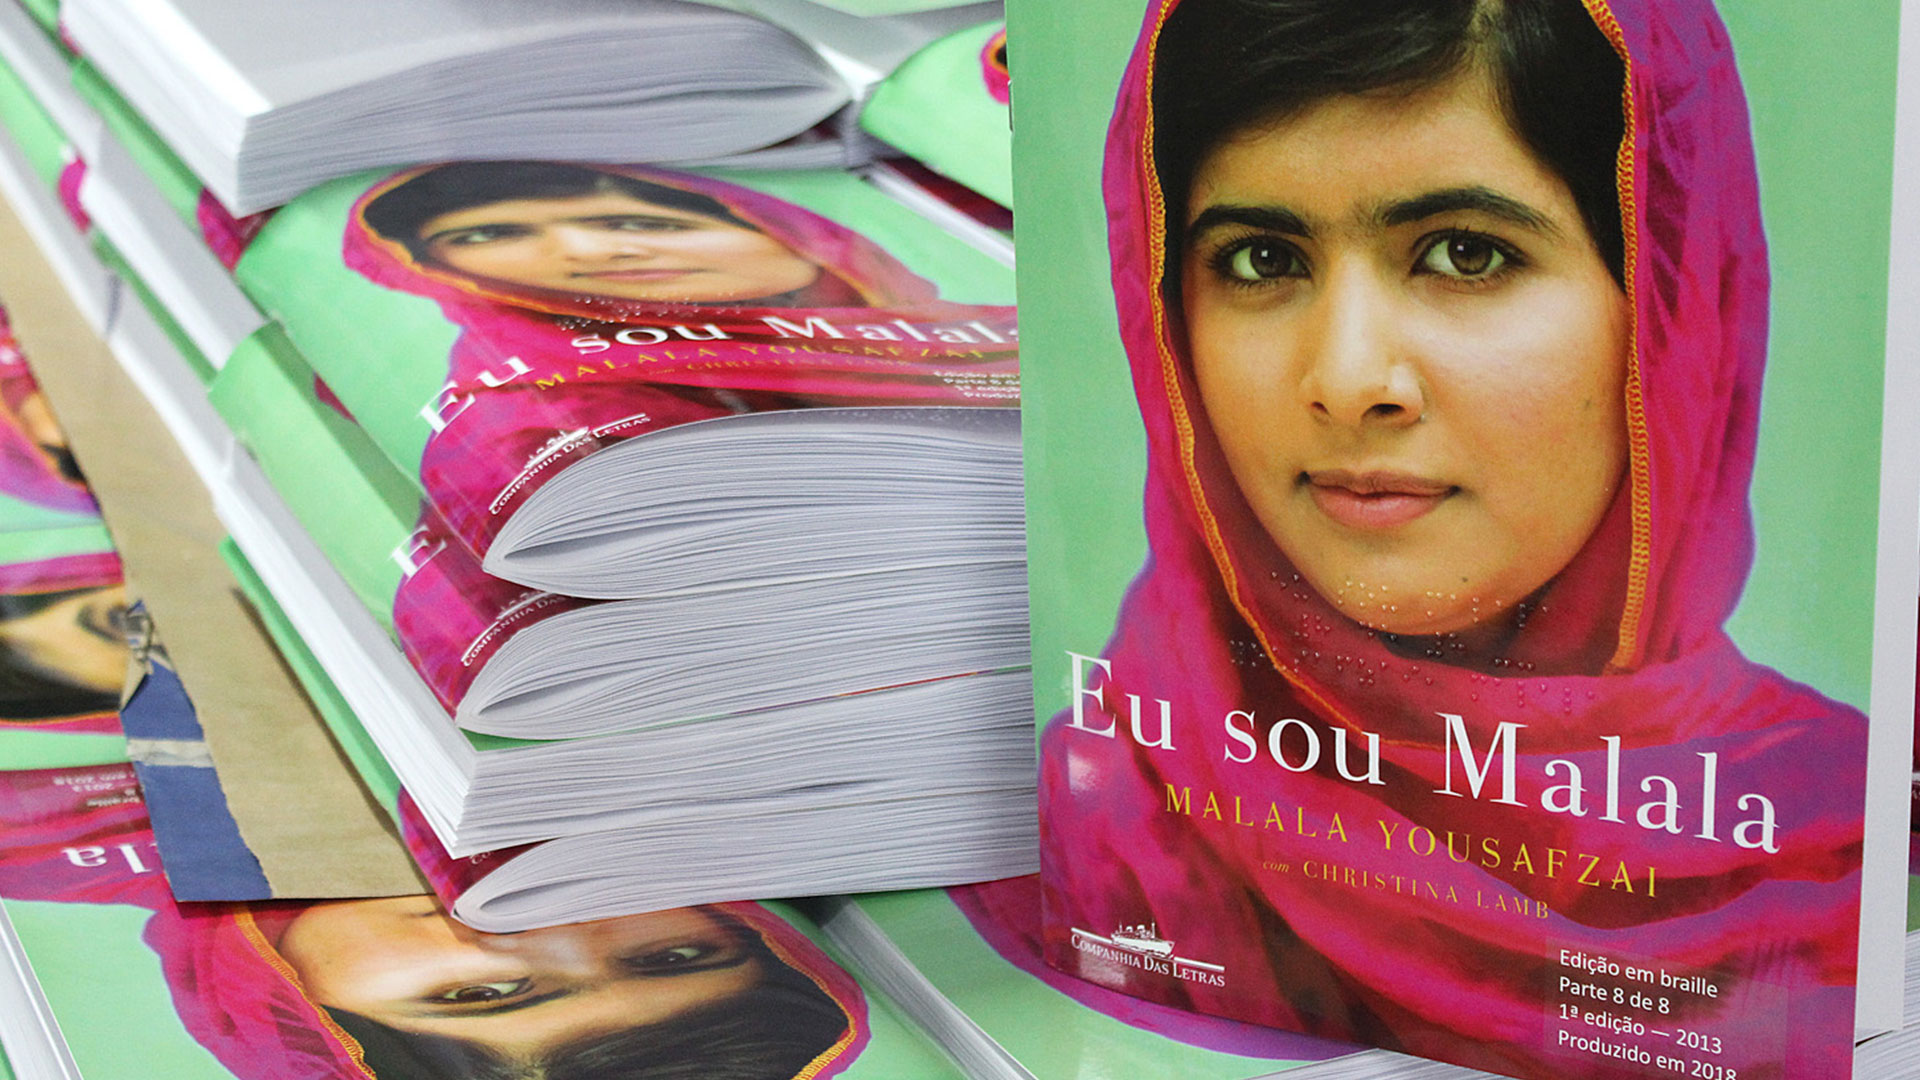 Capa do livro "Eu sou Malala" mostra a jovem paquistanesa Malala Yousfzai de lenço cor-de-rosa sobre um fundo verde.